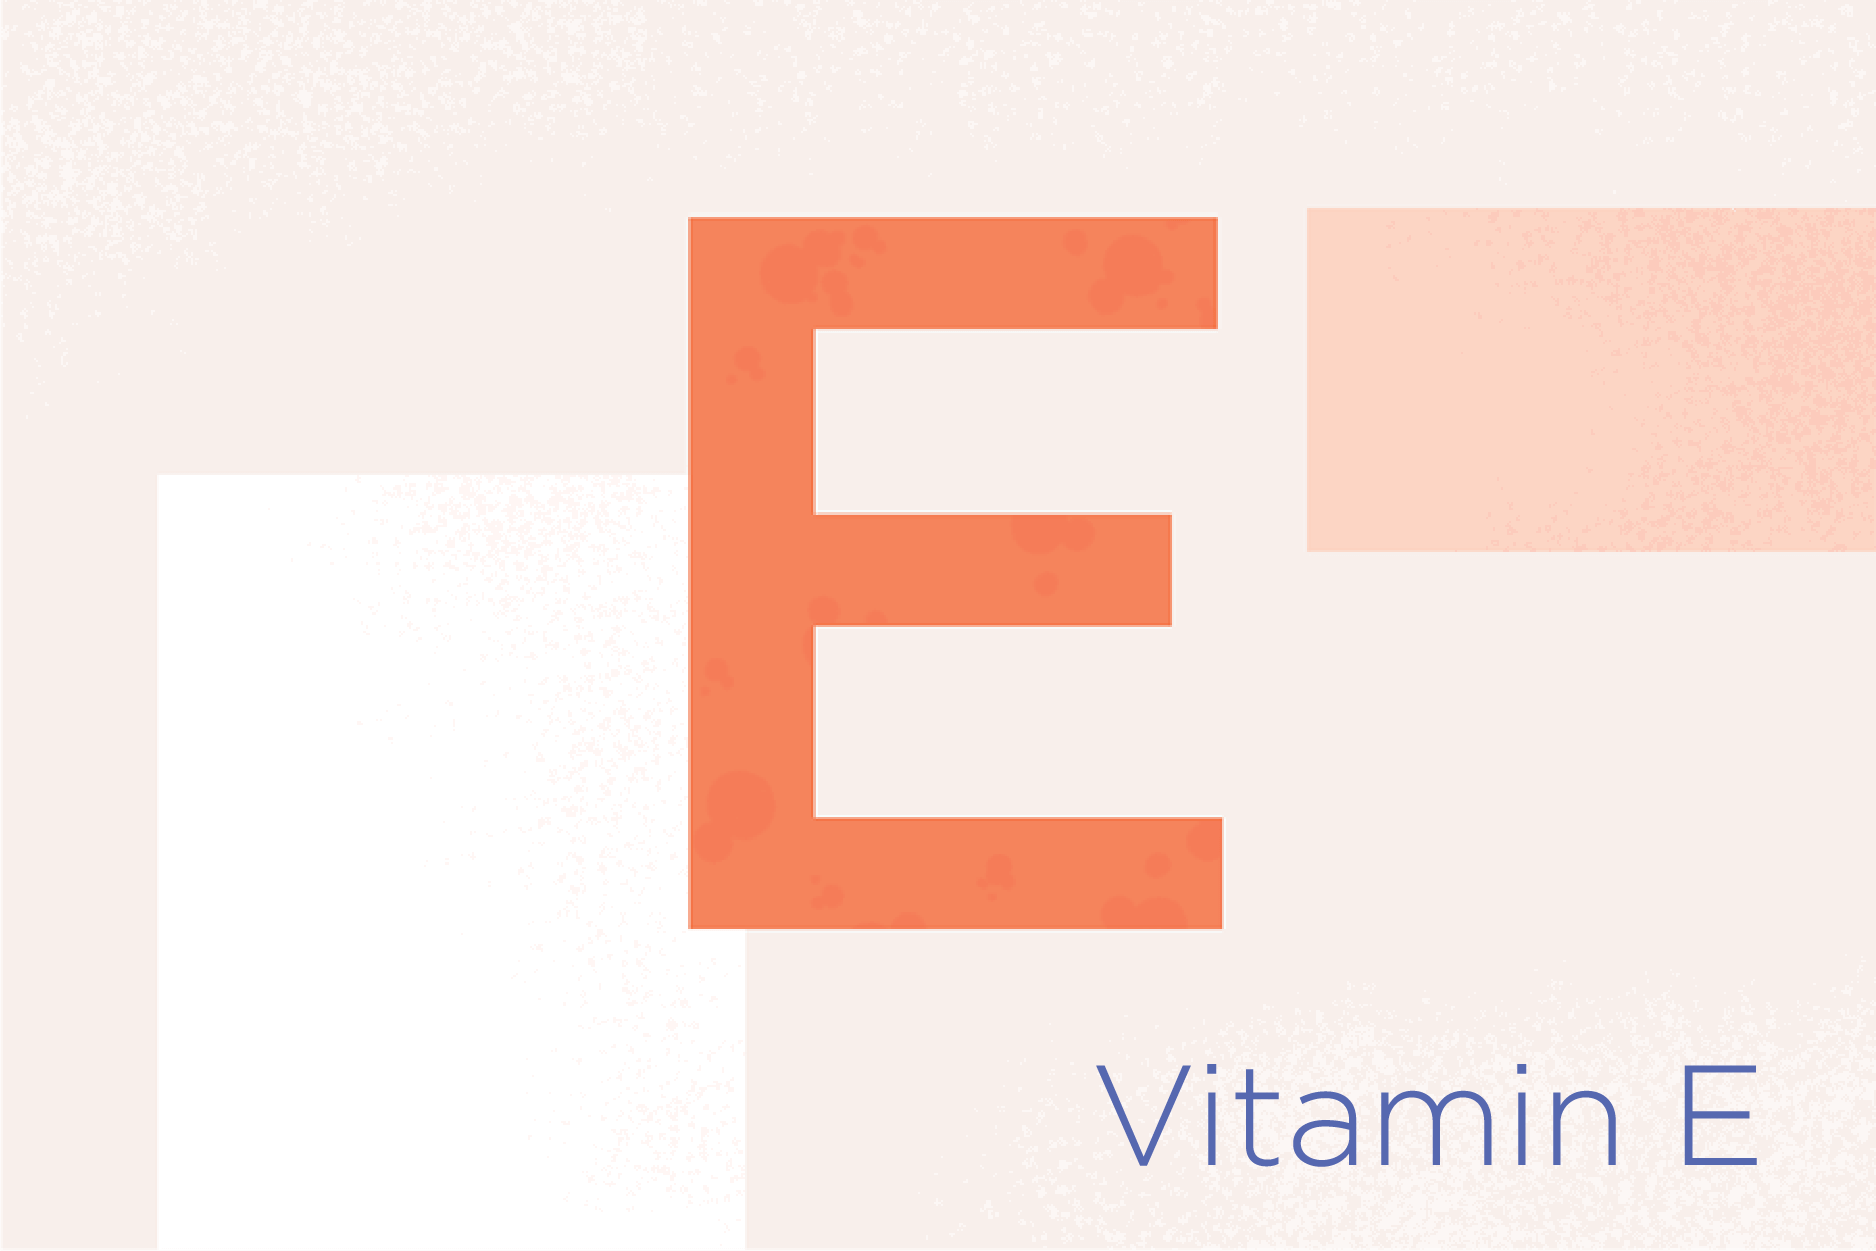 E_VitaminE